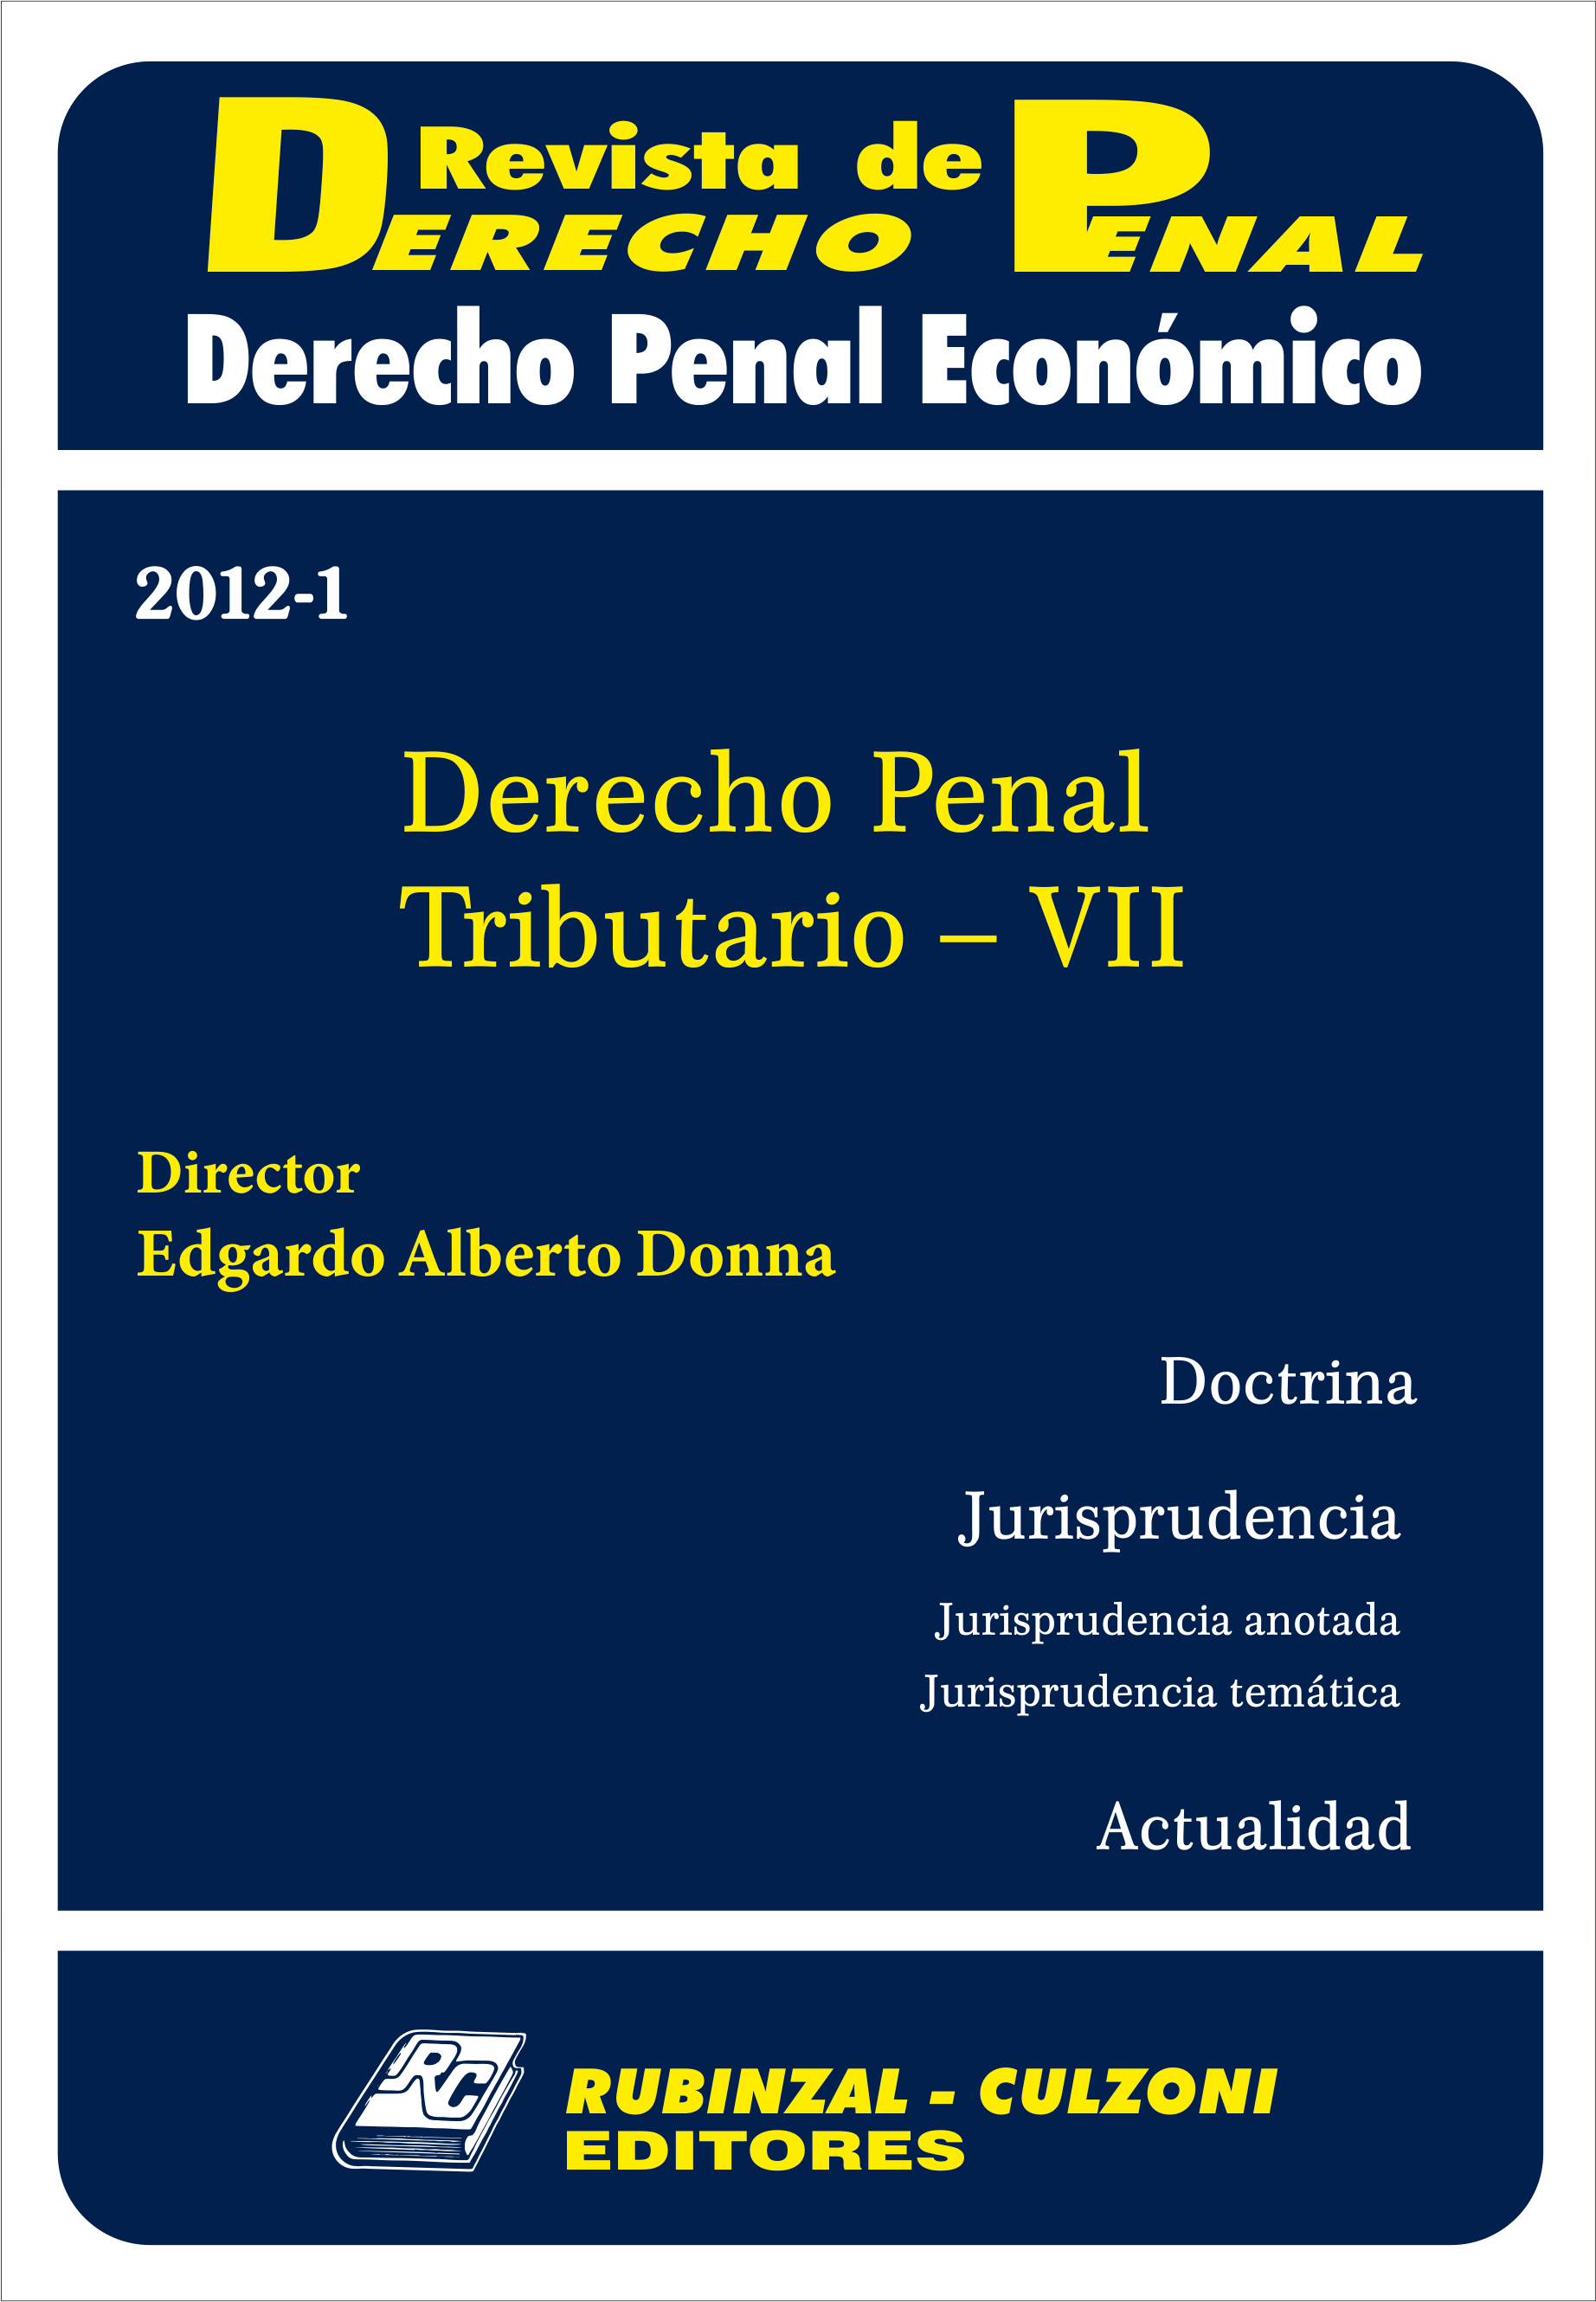 Revista de Derecho Penal Económico - Derecho Penal Tributario - VII.